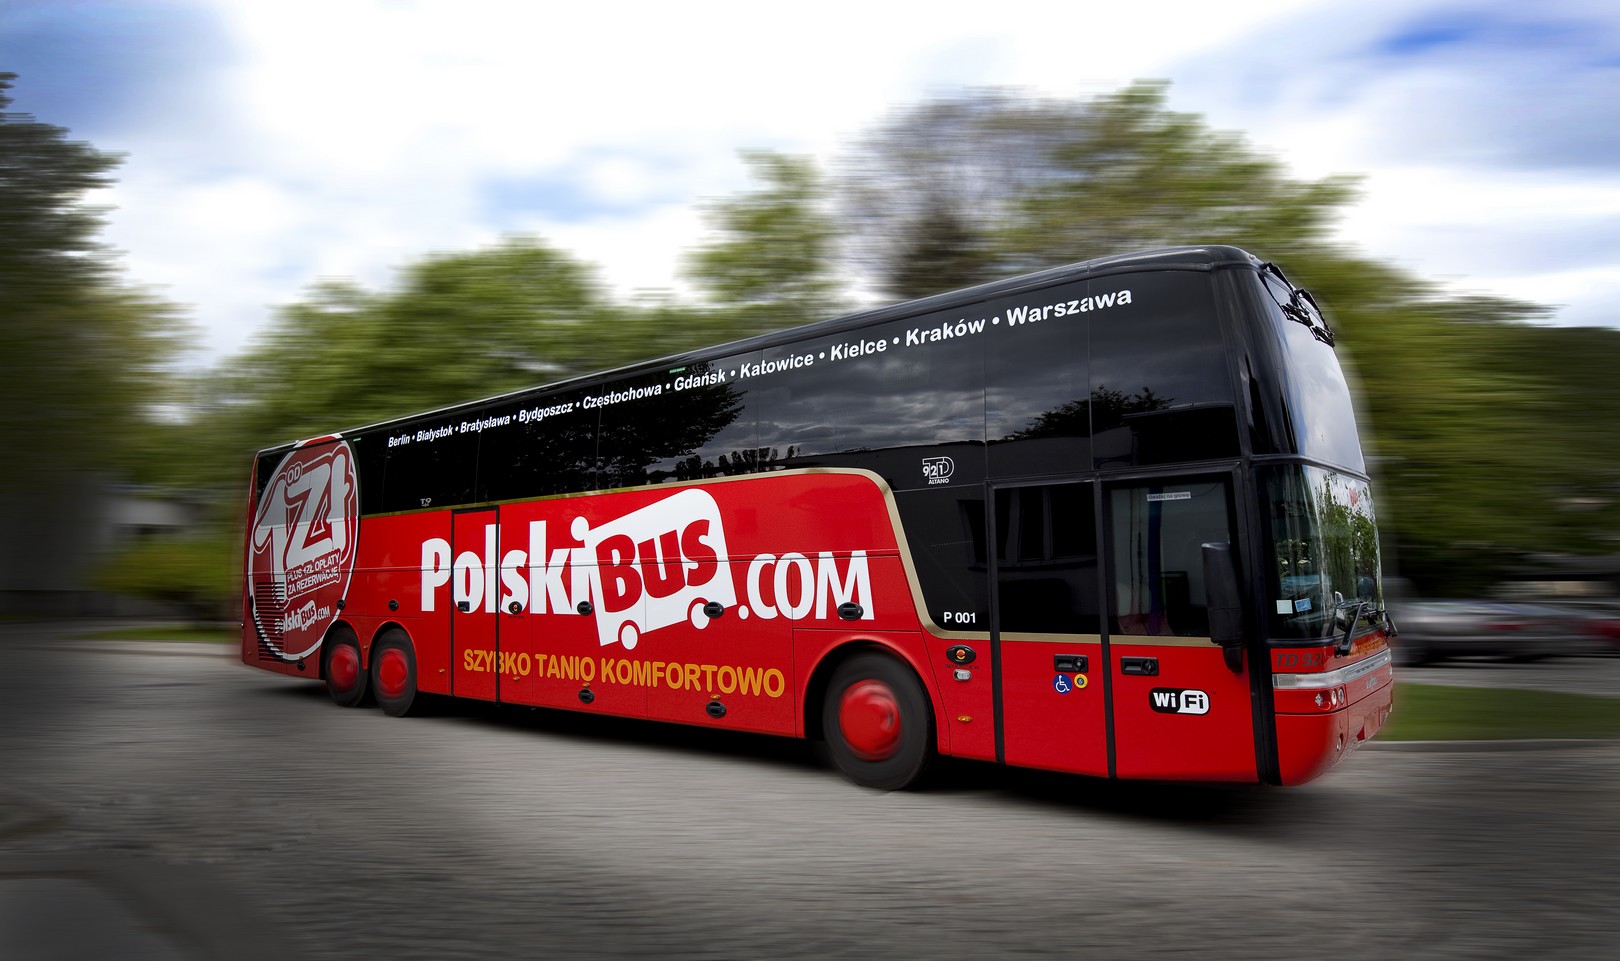 
Polski Bus
, Planujemy wyjazd na IEM 2015